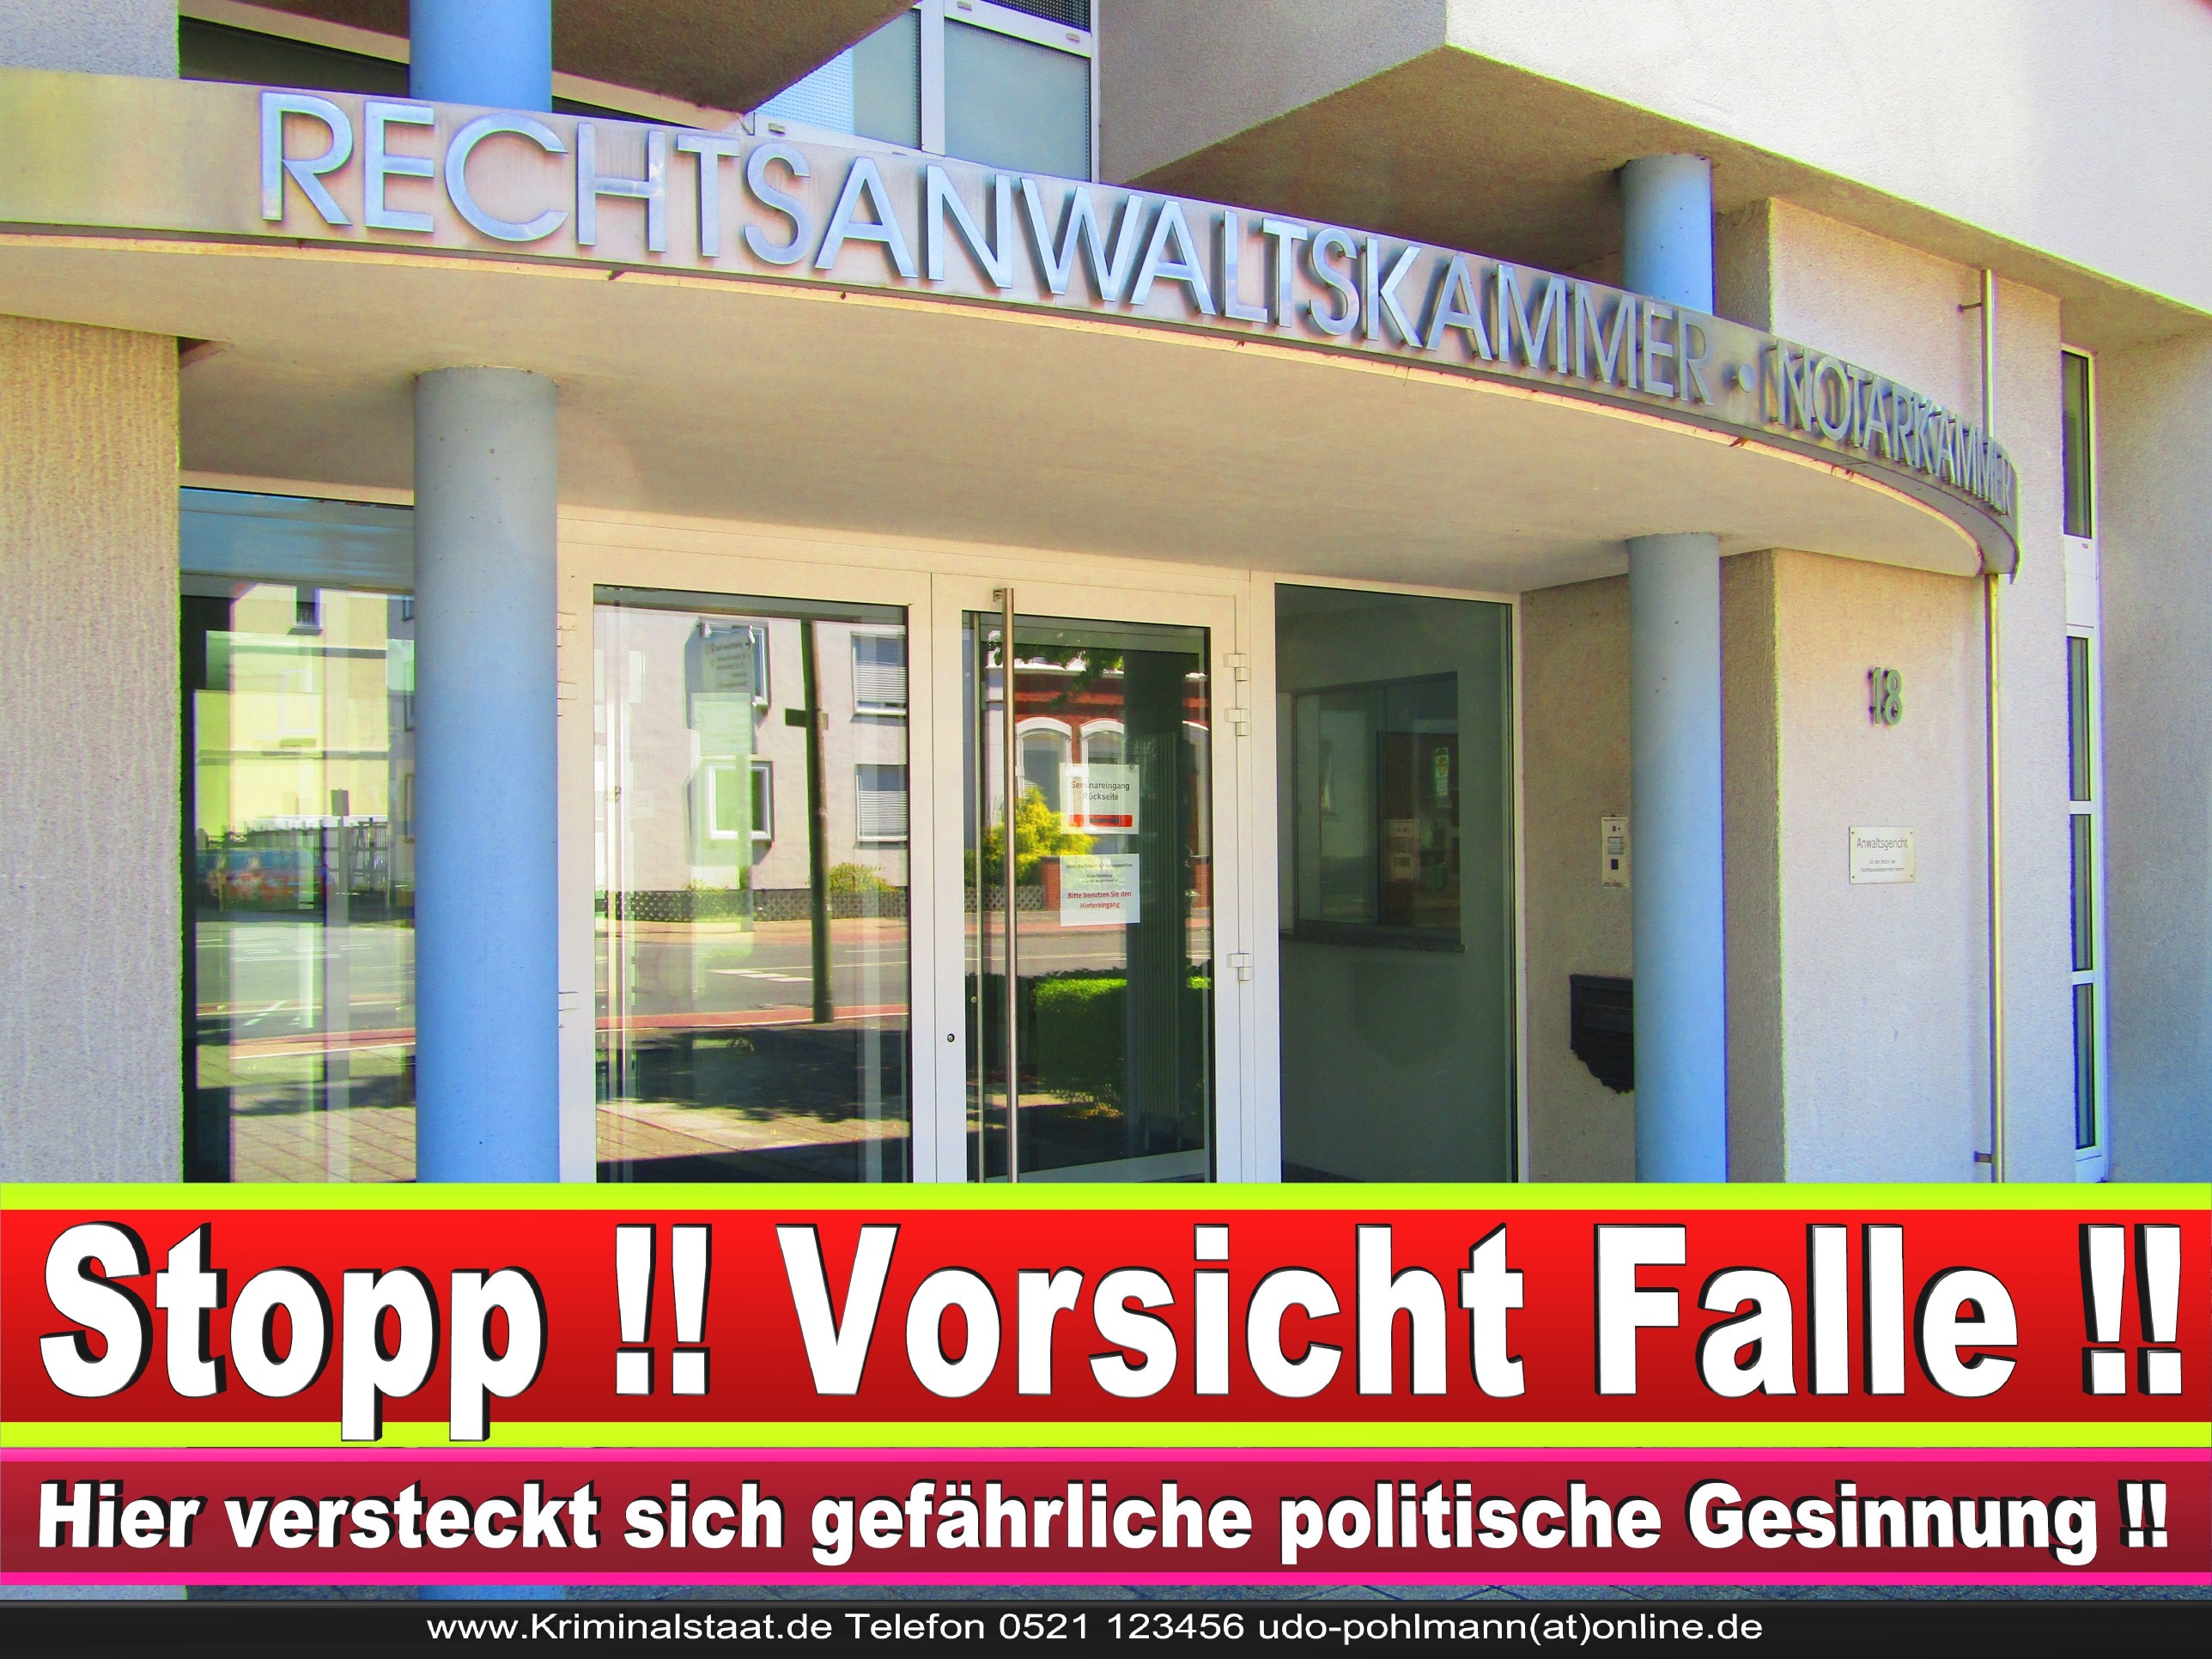 Rechtsanwaltskammer Hamm NRW Justizminister Rechtsanwalt Notar Vermögensverfall Urteil Rechtsprechung CDU SPD FDP Berufsordnung Rechtsanwälte Rechtsprechung (6)